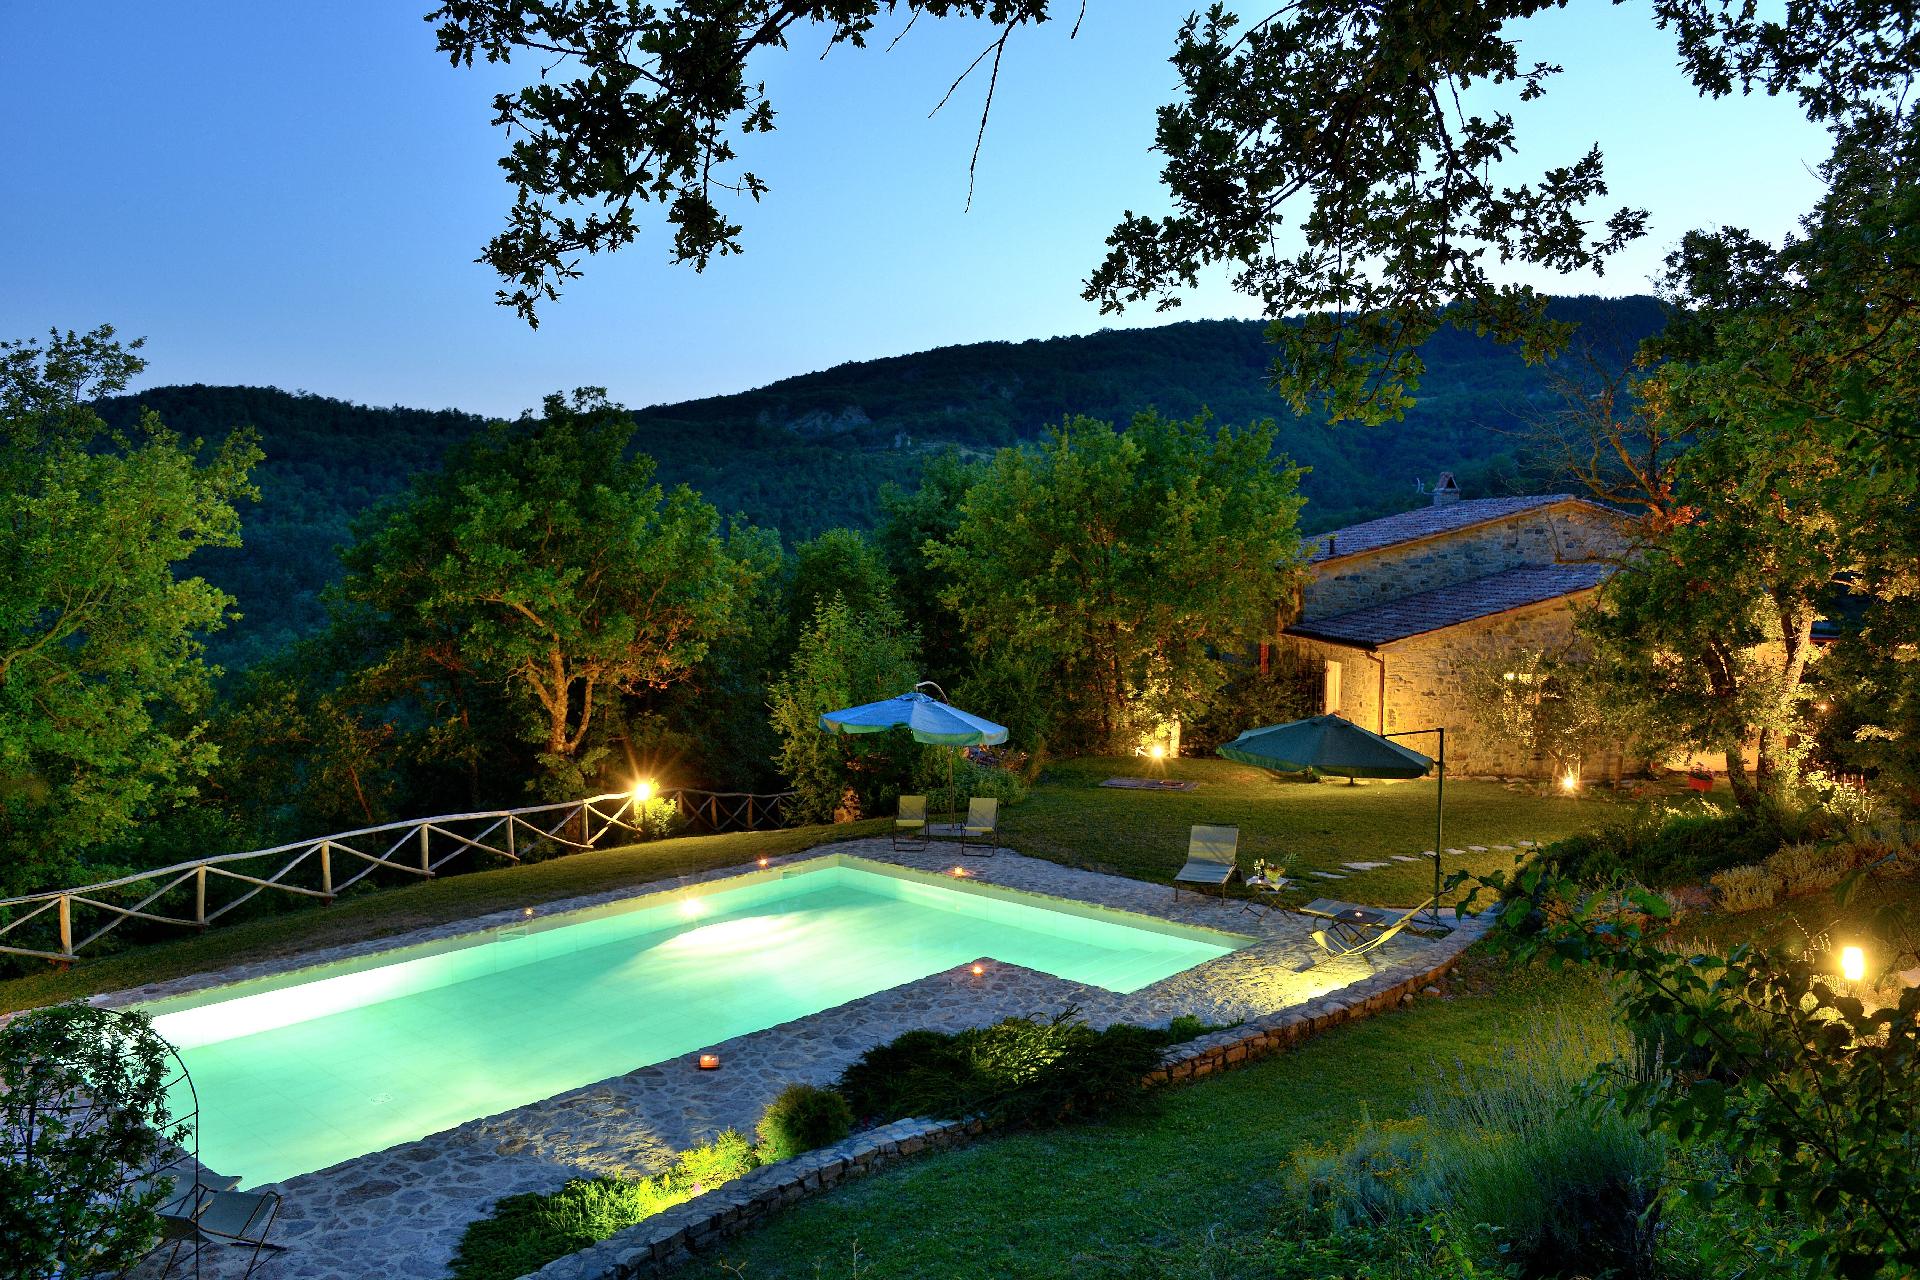 Villa mit Pool für einen einmaligen Urlaub im Ferienhaus in Italien